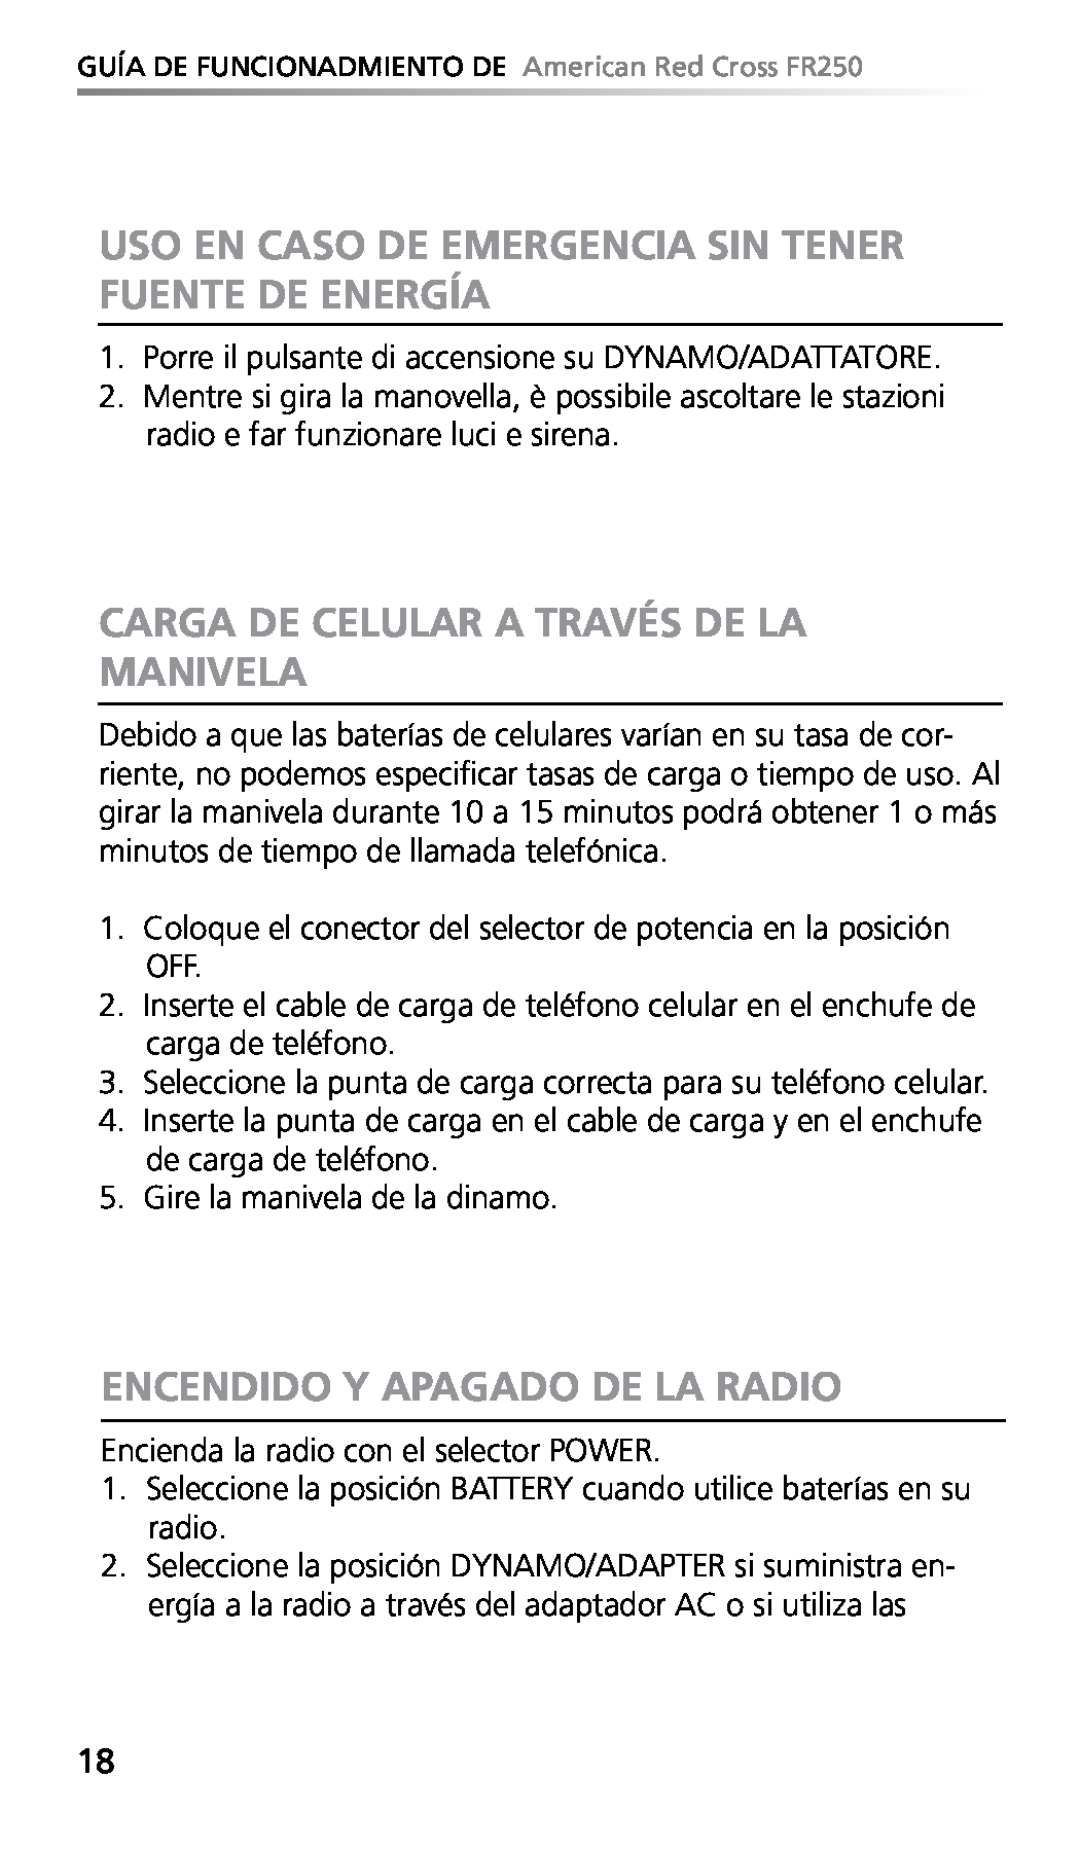 Eton FR250 owner manual Carga De Celular A Través De La Manivela, Encendido Y Apagado De La Radio 